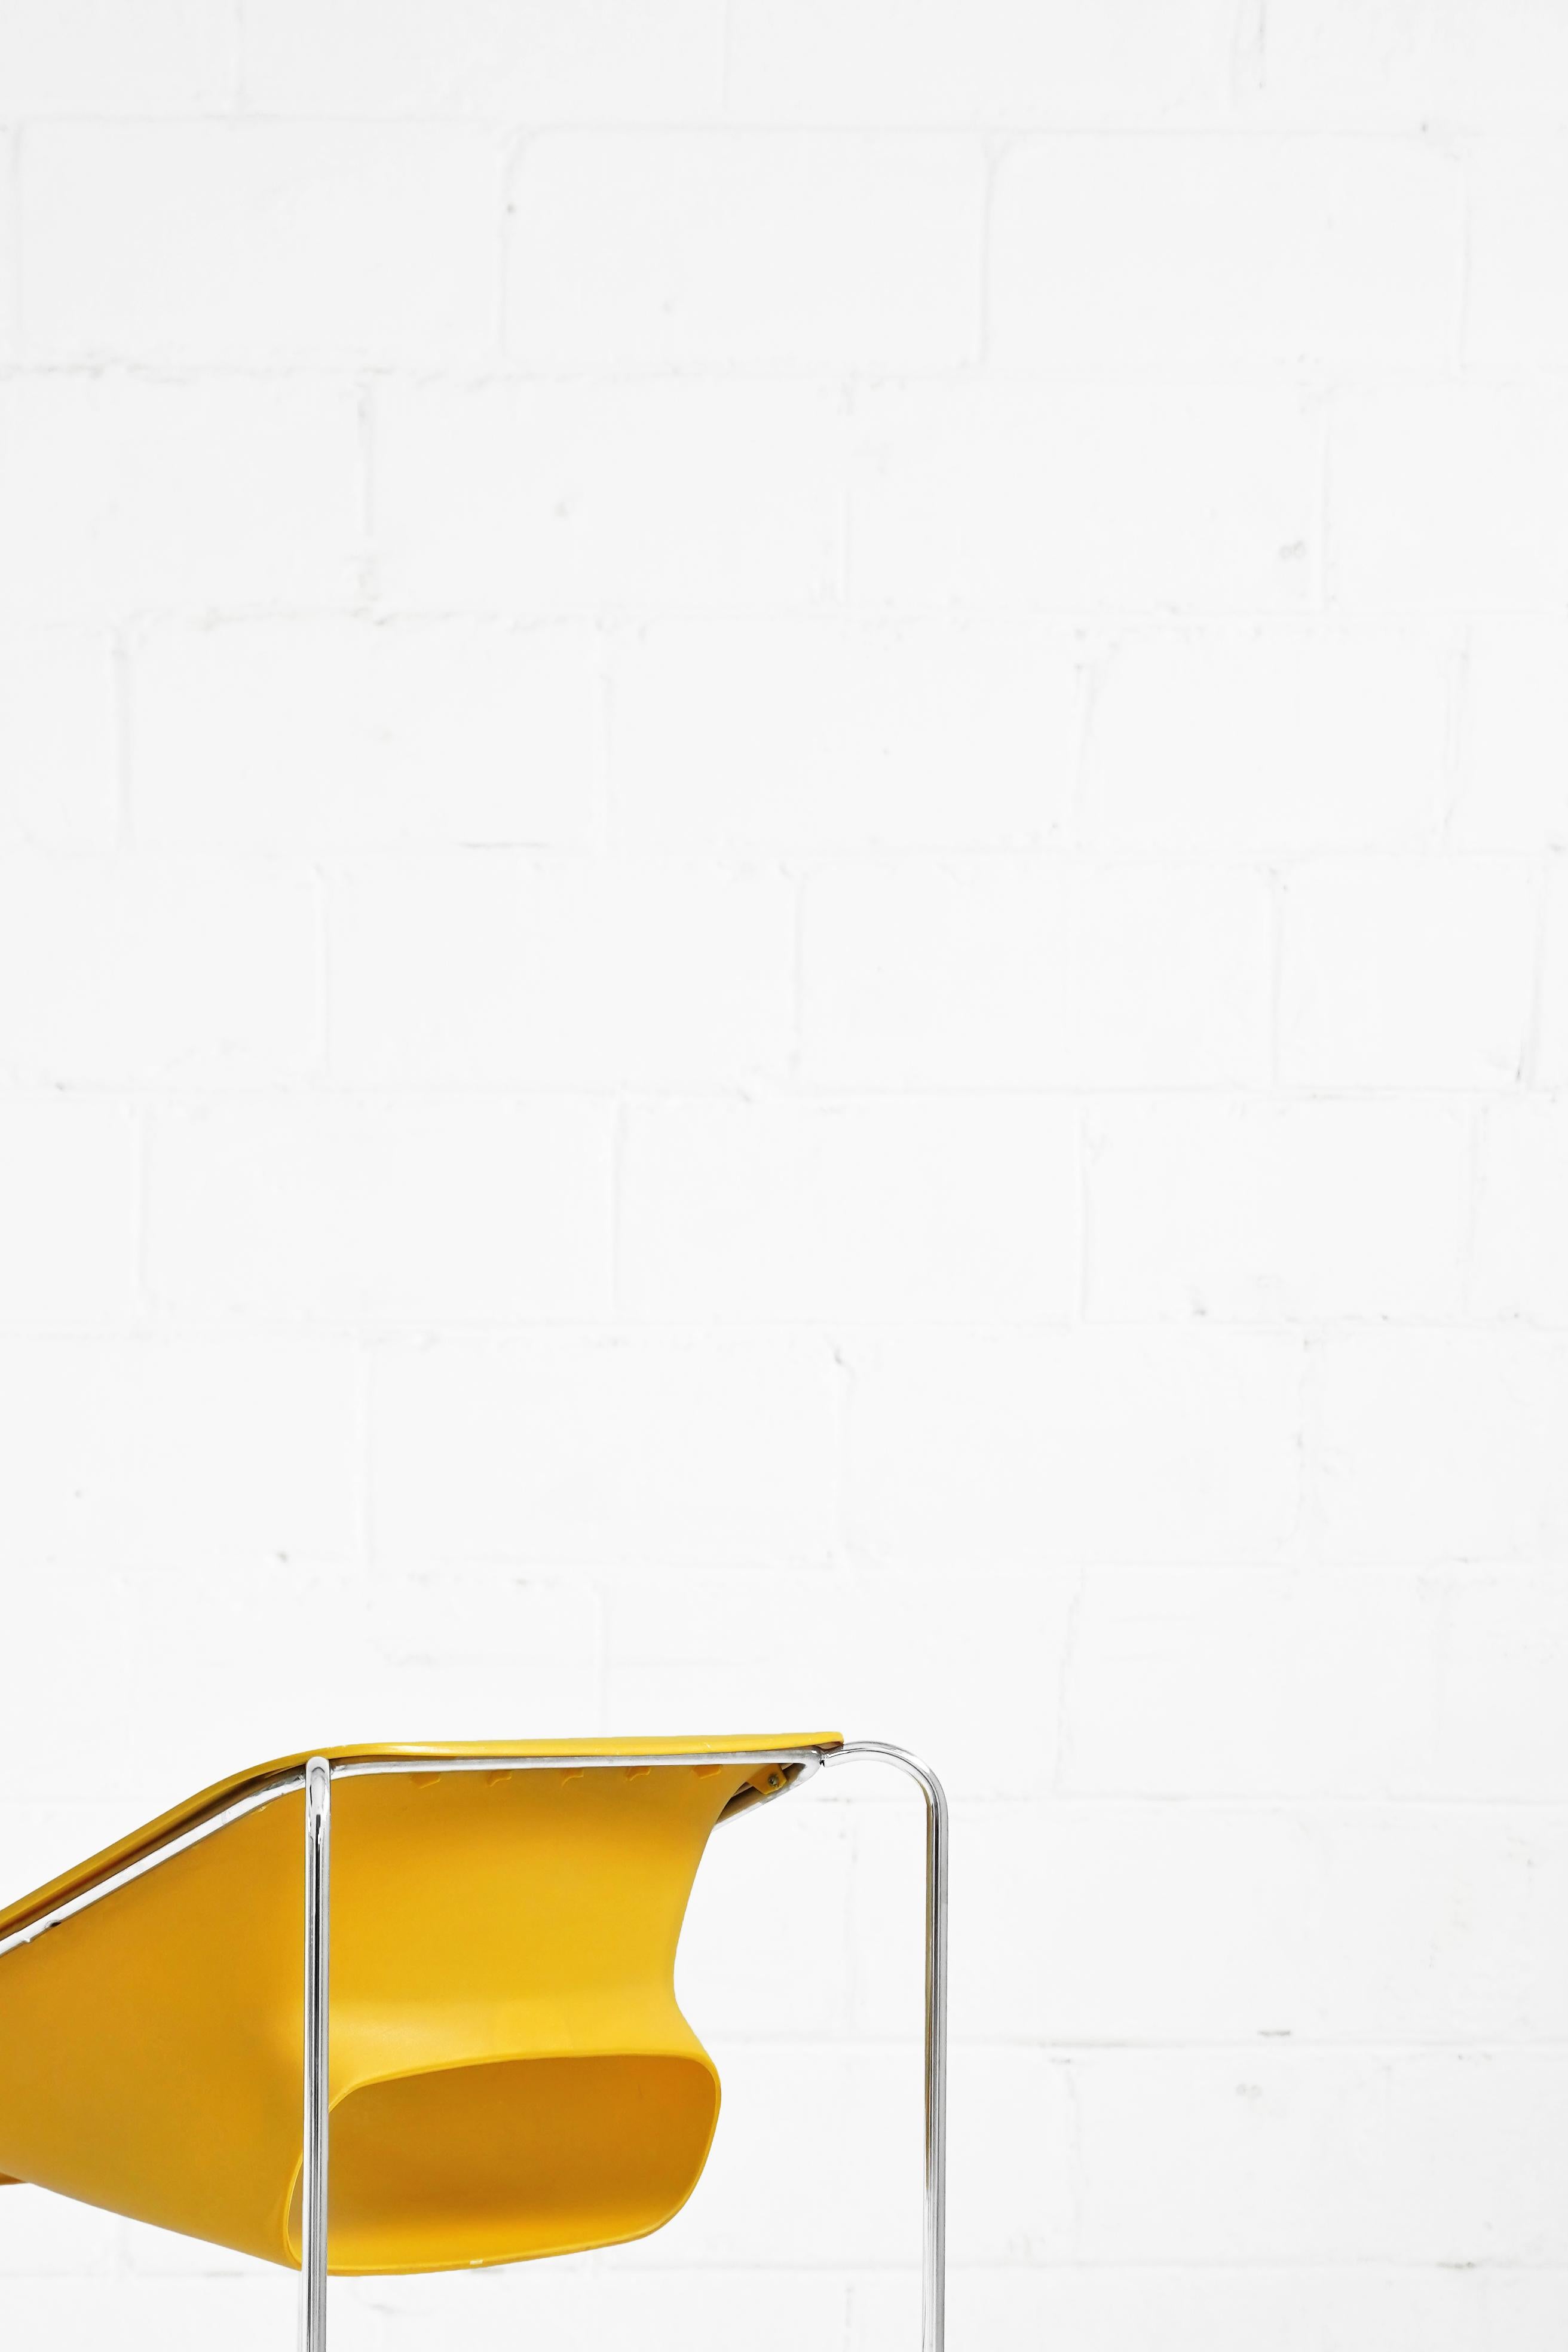 Chaise Lotus en jaune par Paul Boulva pour Artopex 3